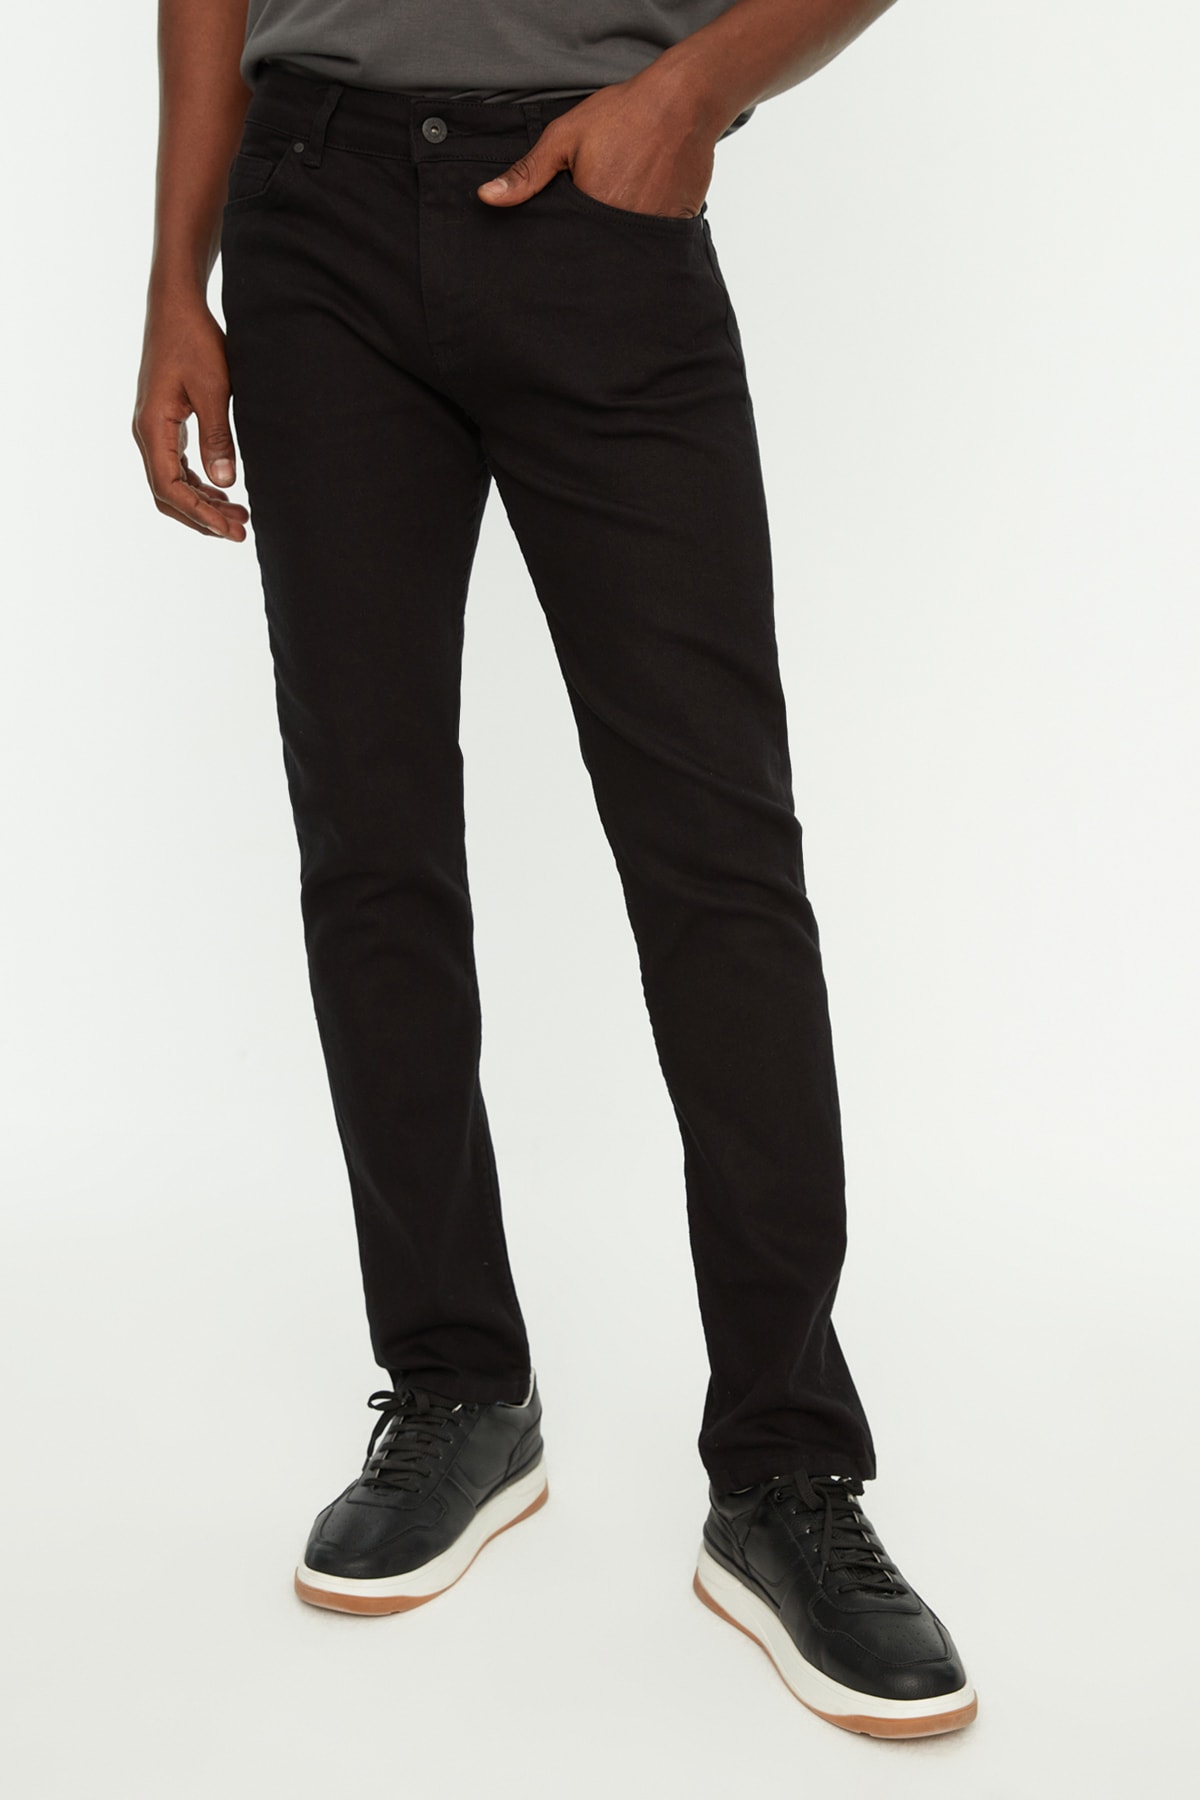 Джинсы Trendyol скинни из нелиняющего материала, черный джинсы скинни uniqlo размер xs черный